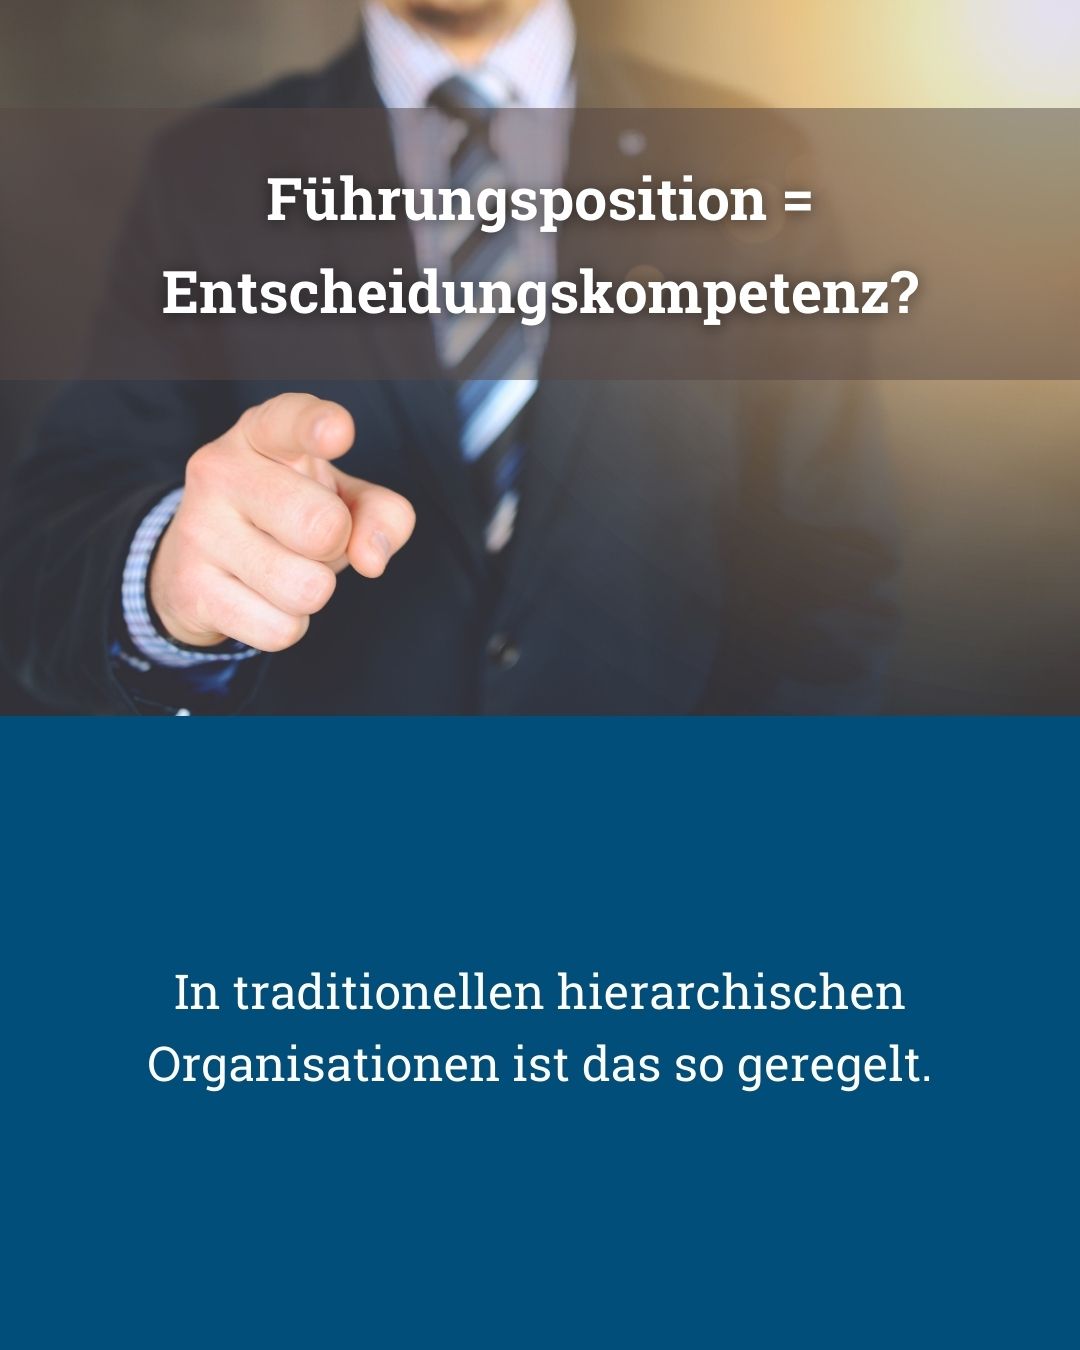 Leadership und Entscheidungskompetenz in zukunftsfähigen Organisationen - von Klaus Nitsche - 2